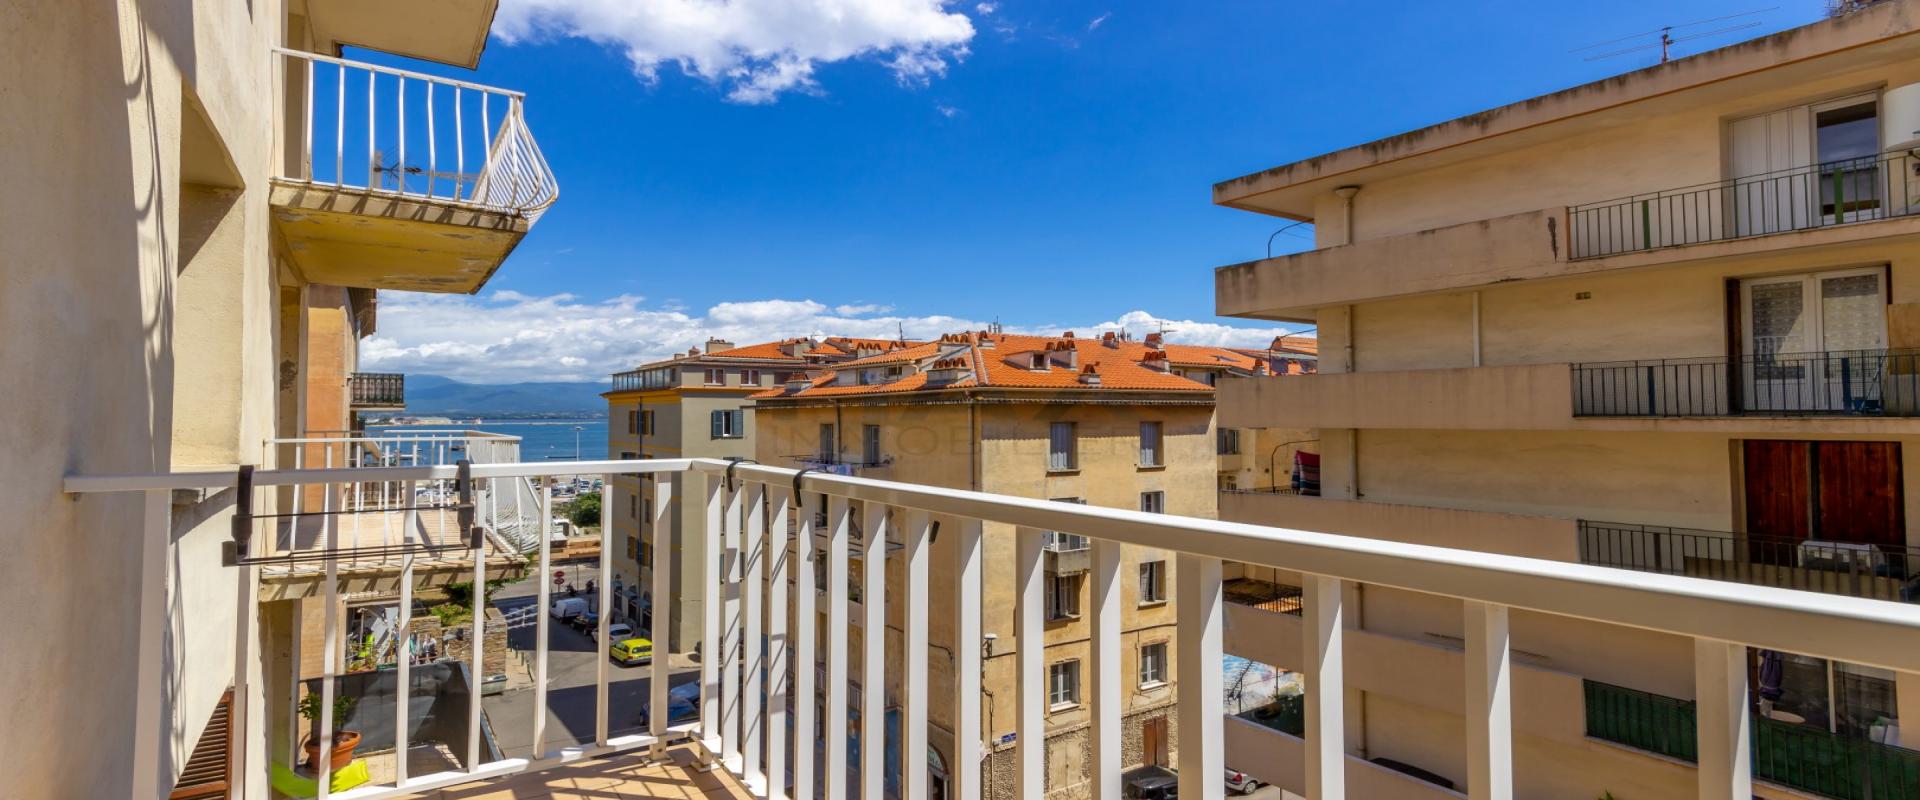 En Corse, à AJACCIO, vente d'un appartement F2 de 64 m² entièrement rénové, quartier Sainte Lucie 